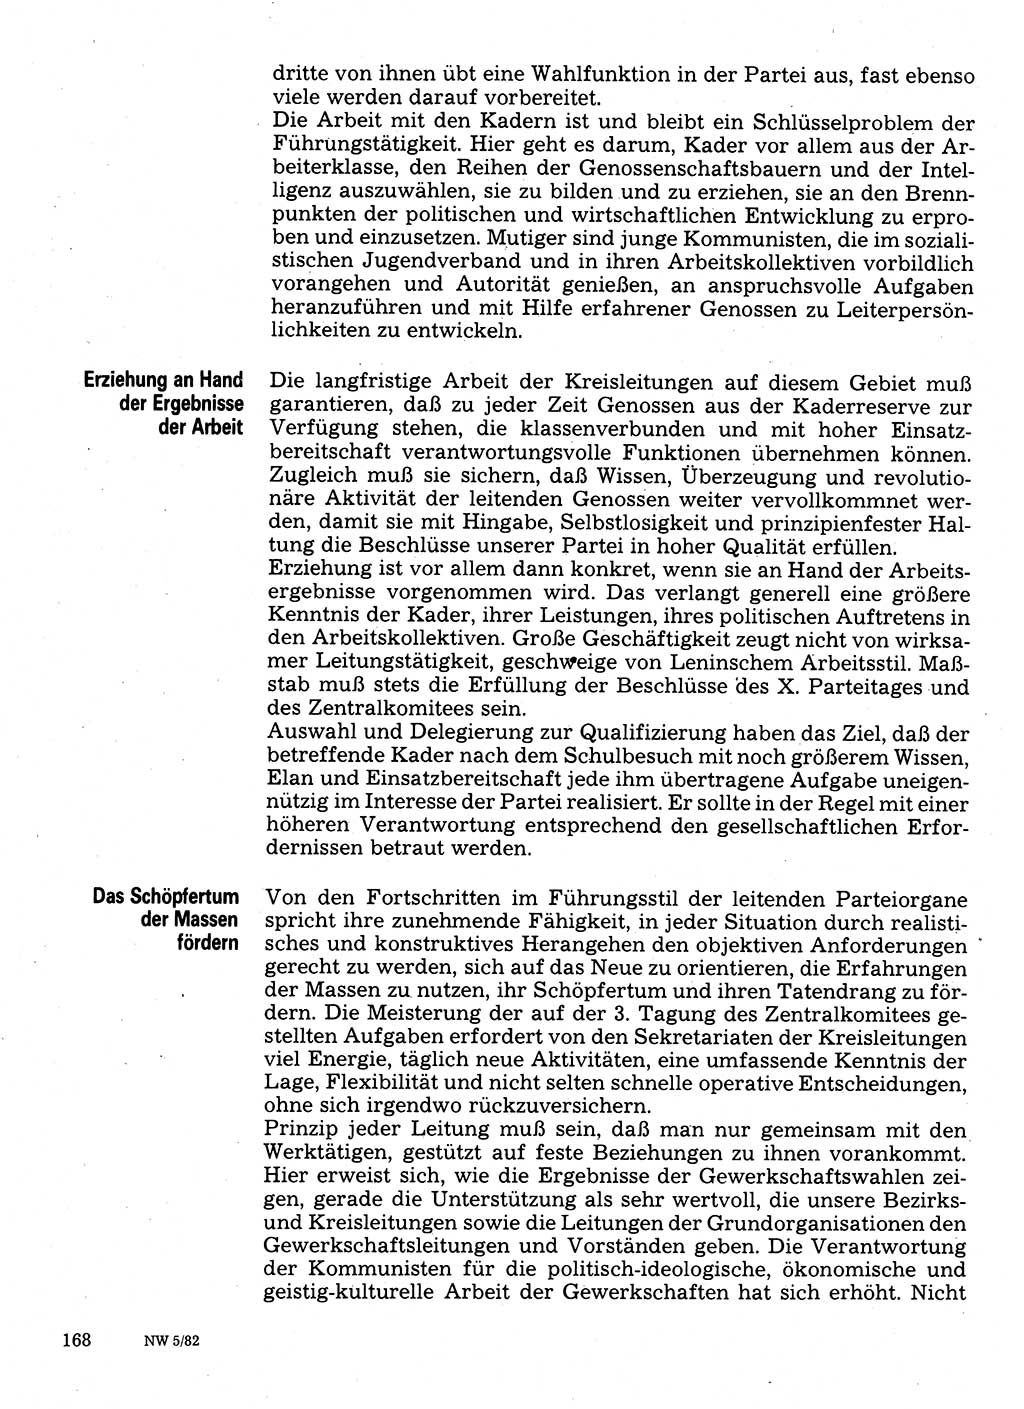 Neuer Weg (NW), Organ des Zentralkomitees (ZK) der SED (Sozialistische Einheitspartei Deutschlands) für Fragen des Parteilebens, 37. Jahrgang [Deutsche Demokratische Republik (DDR)] 1982, Seite 168 (NW ZK SED DDR 1982, S. 168)